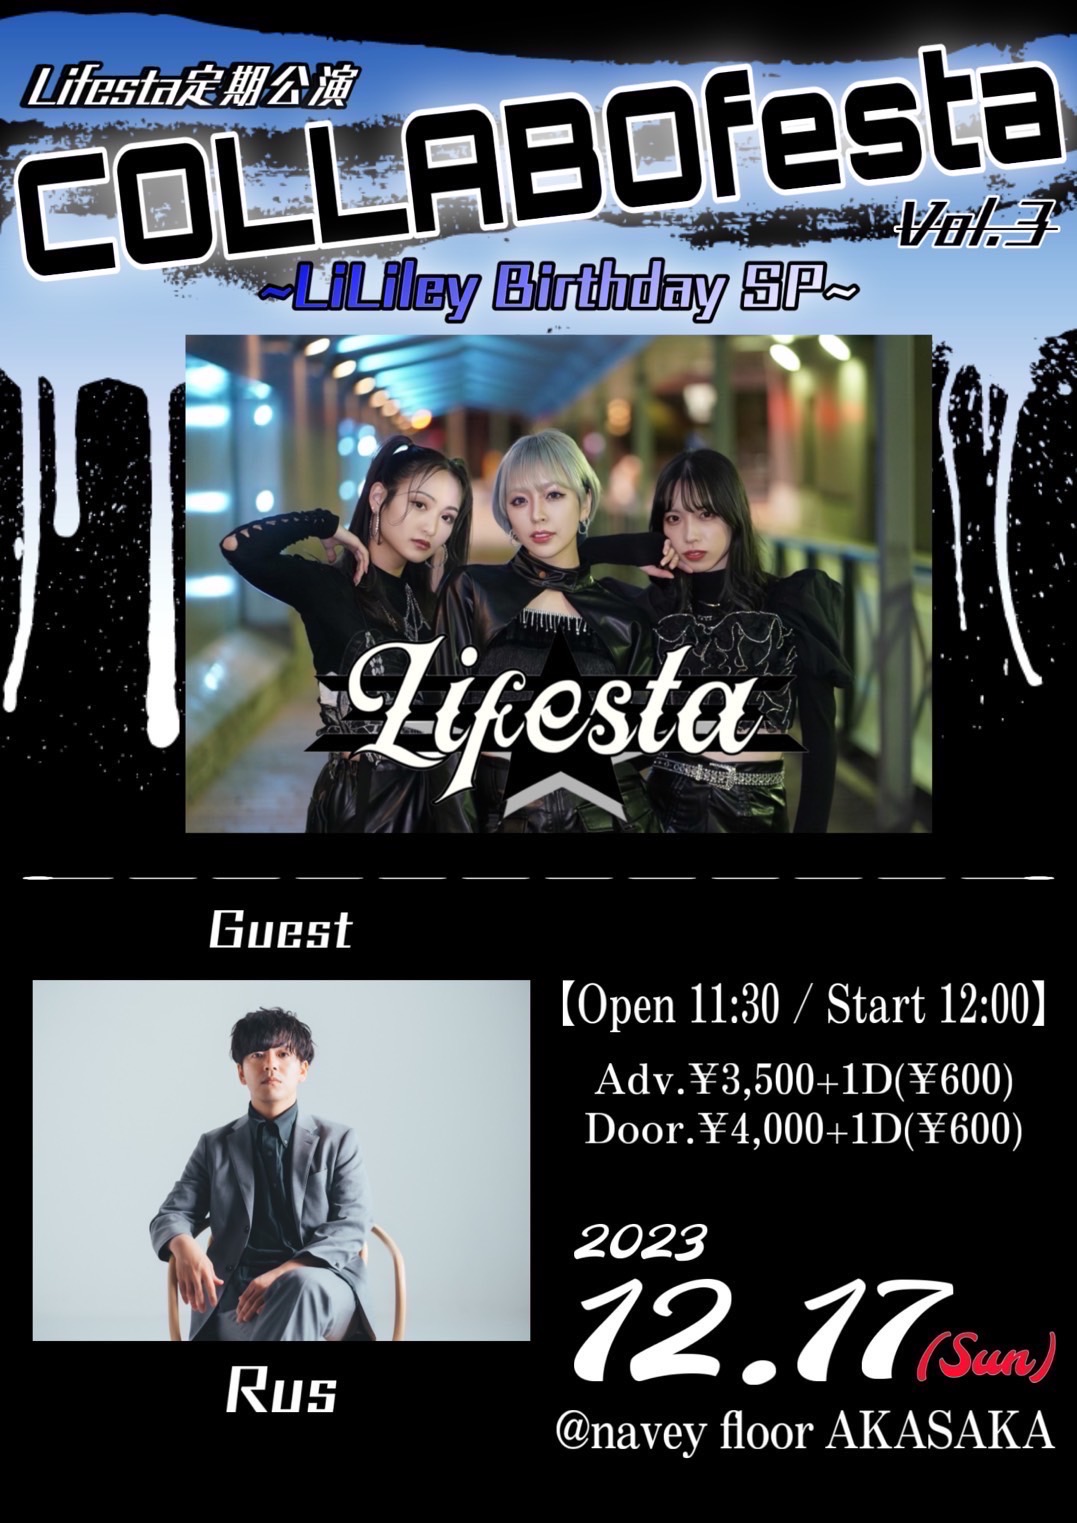 初ライブやります！2023/12/17(日) Lifesta定期公演『COLLABOfesta』vol.3 